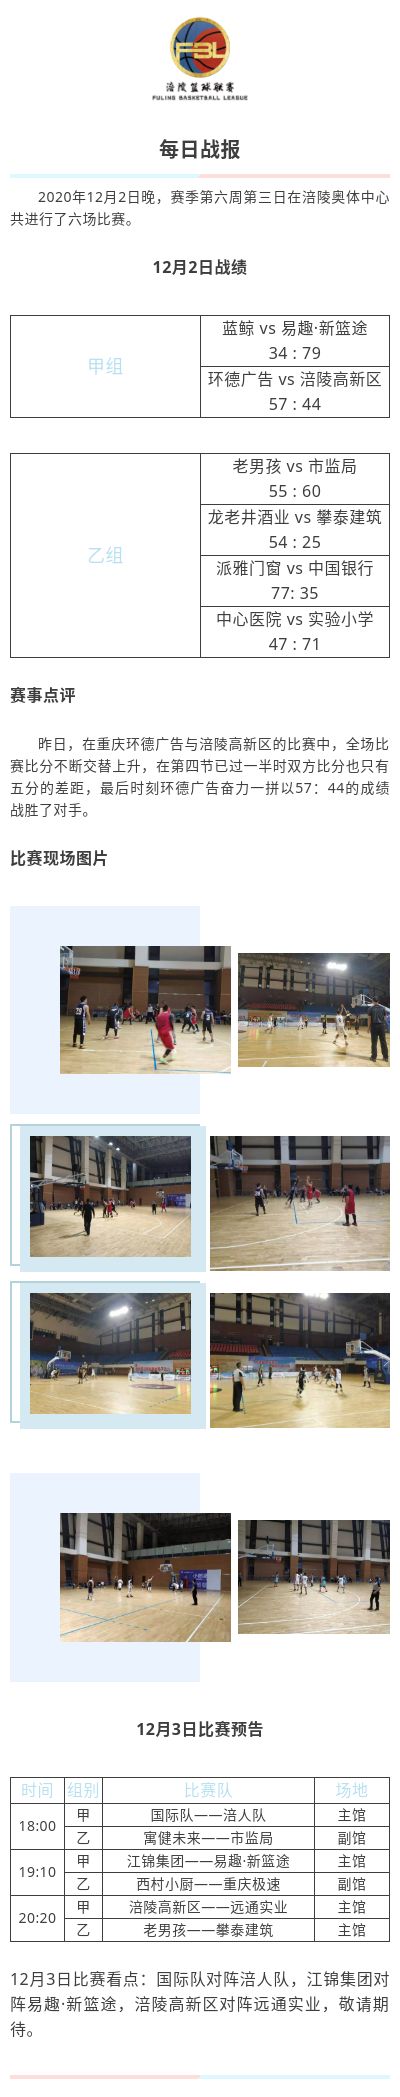 涪陵高新区·涪陵篮球联赛（FBL）2020赛季每日战报12.2